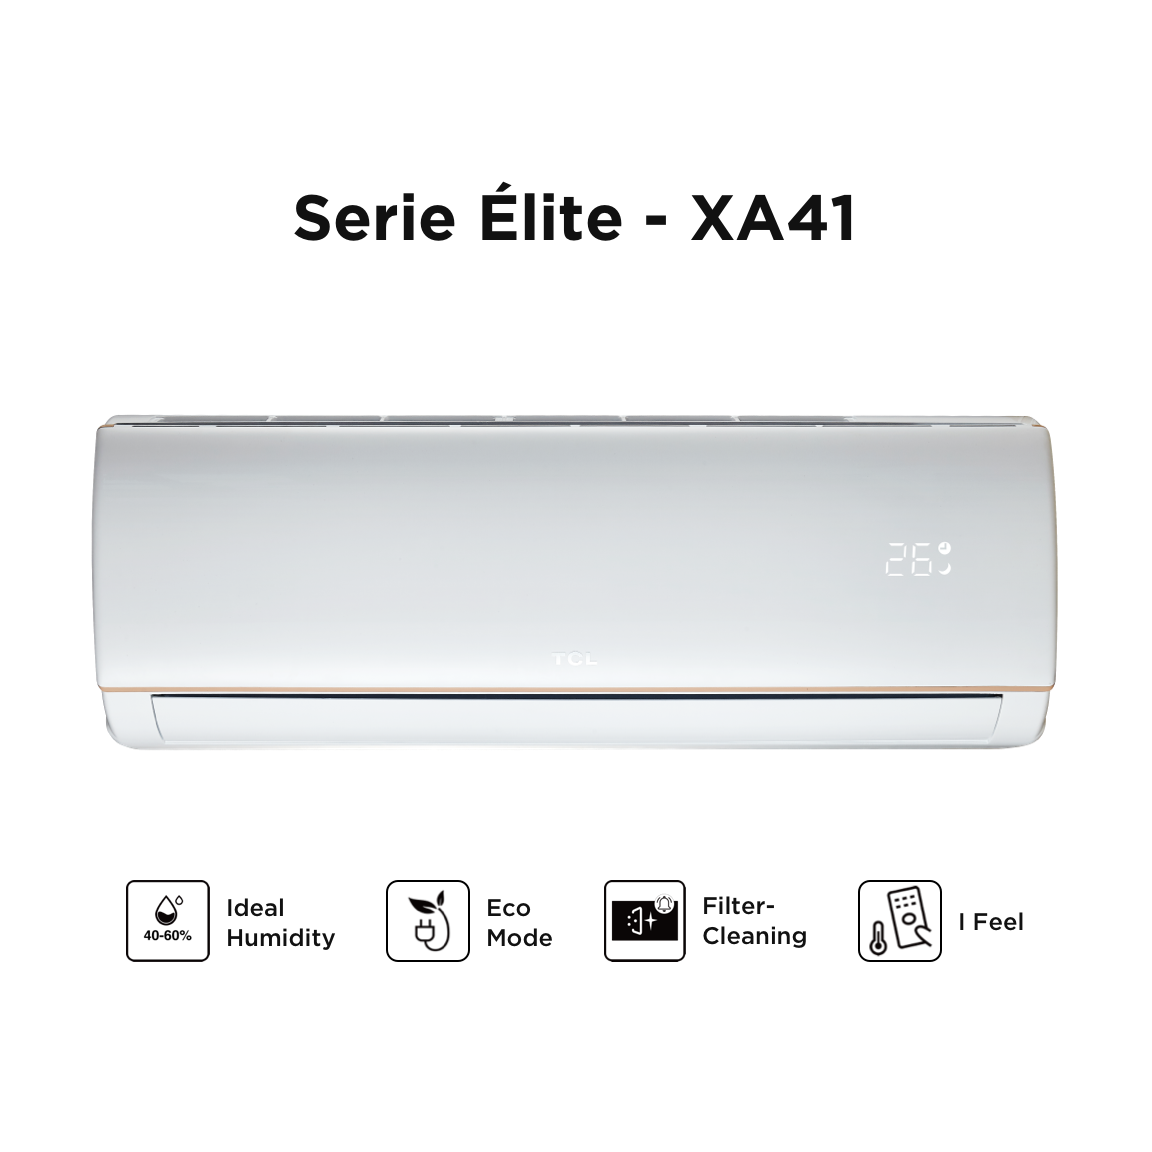 南宫ng·28 air conditioner XA41